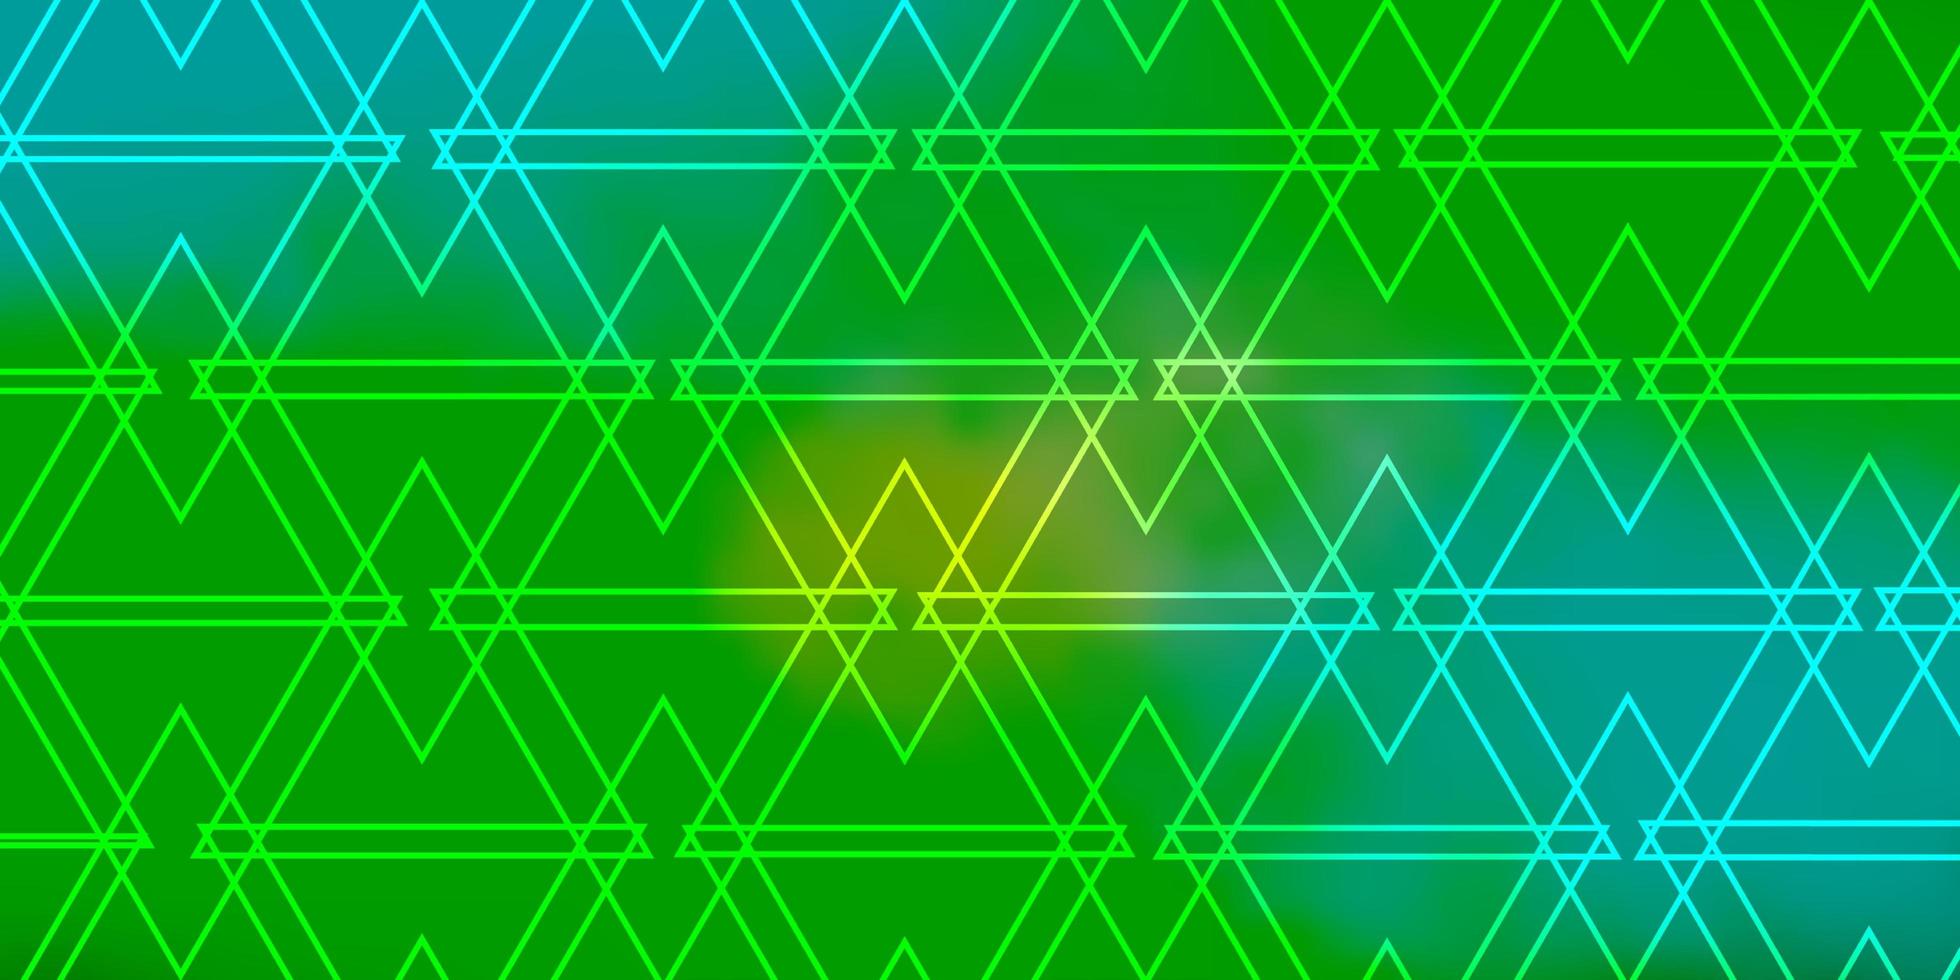 ljusblå, grön vektormall med kristaller, trianglar. glitter abstrakt illustration med triangulära former. mönster för webbplatser. vektor